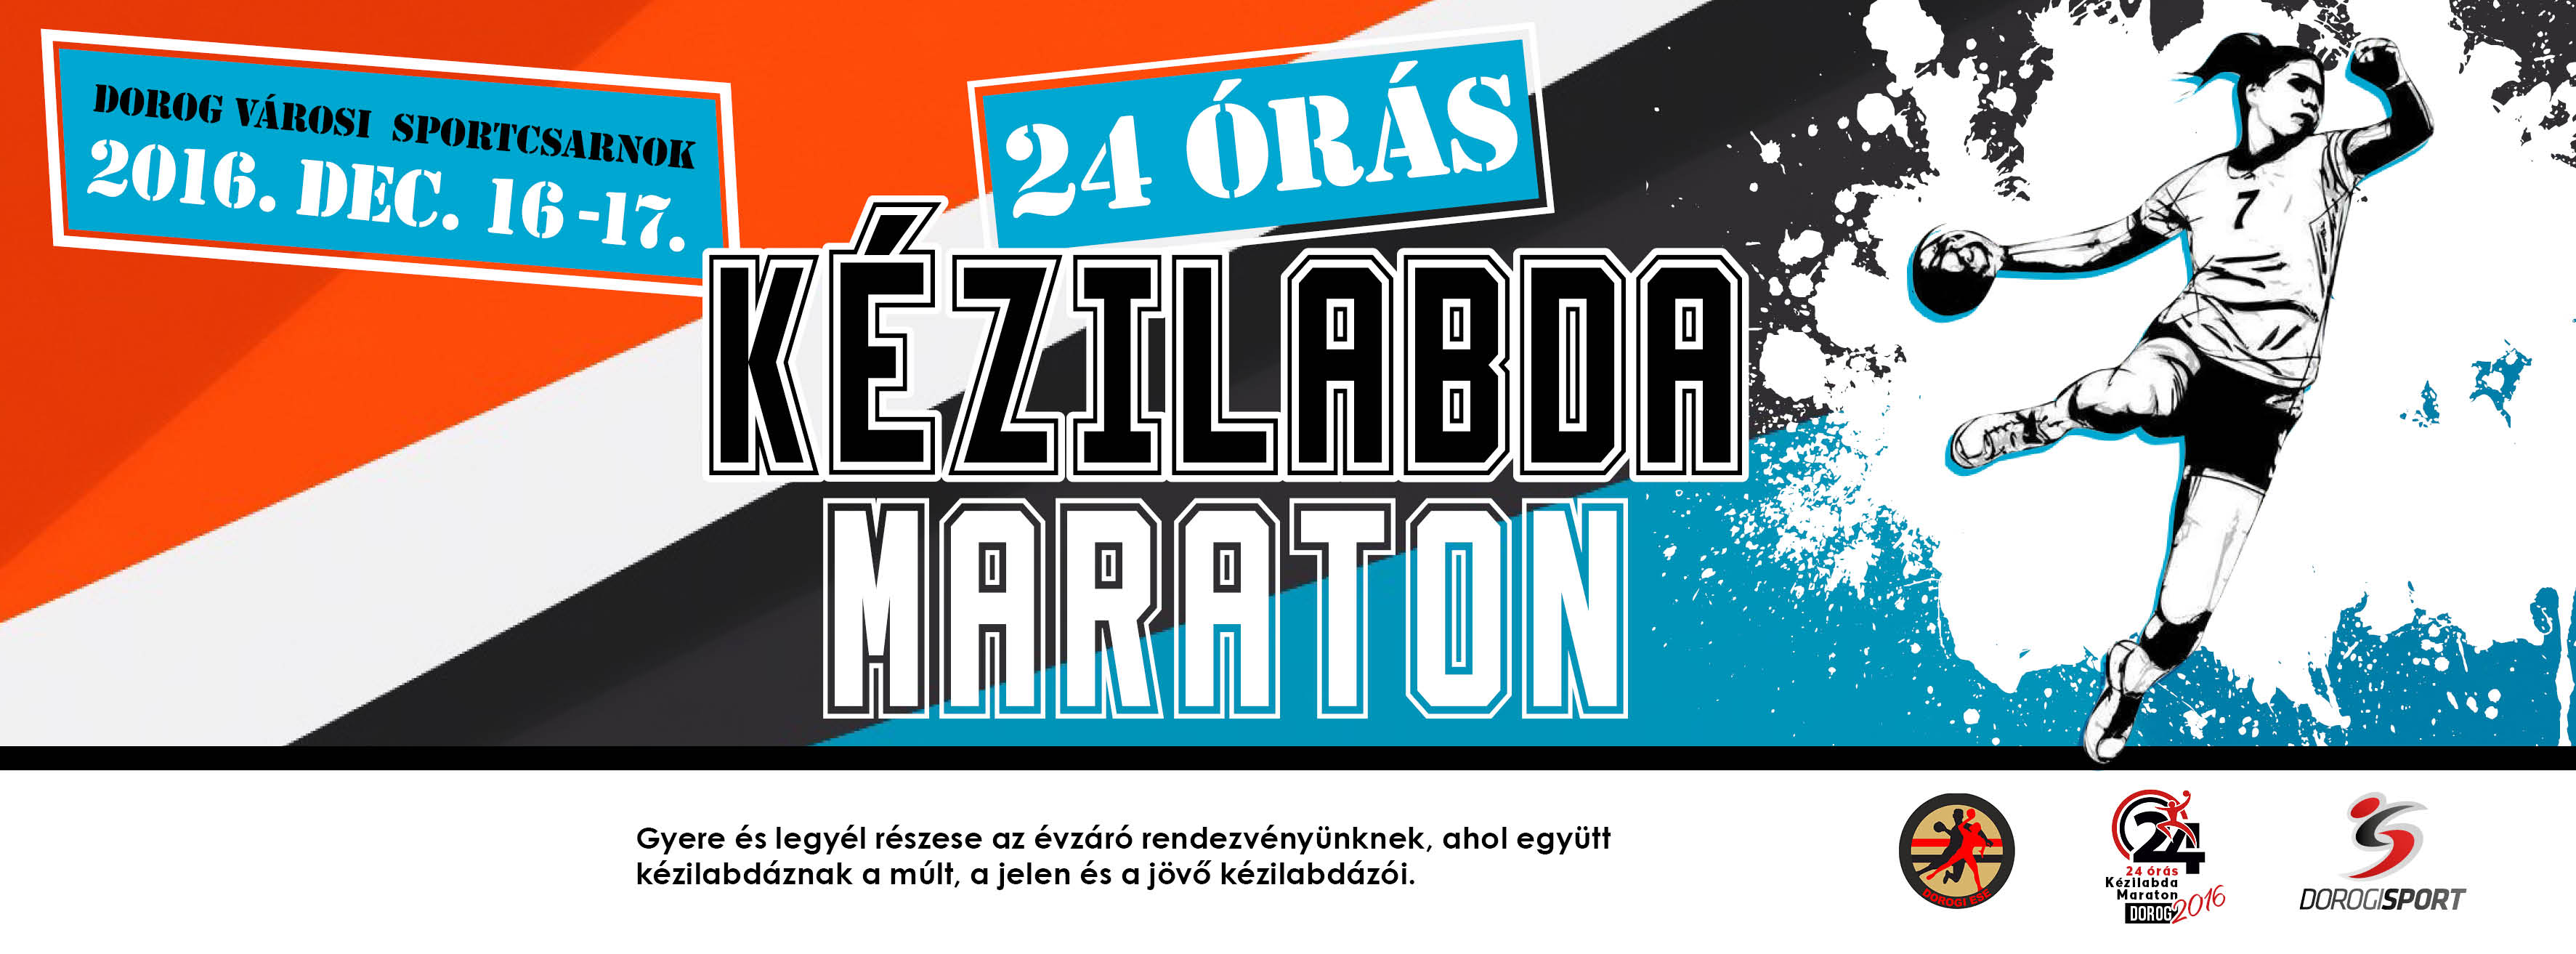 Újra 24 órás Kézilabda Maraton